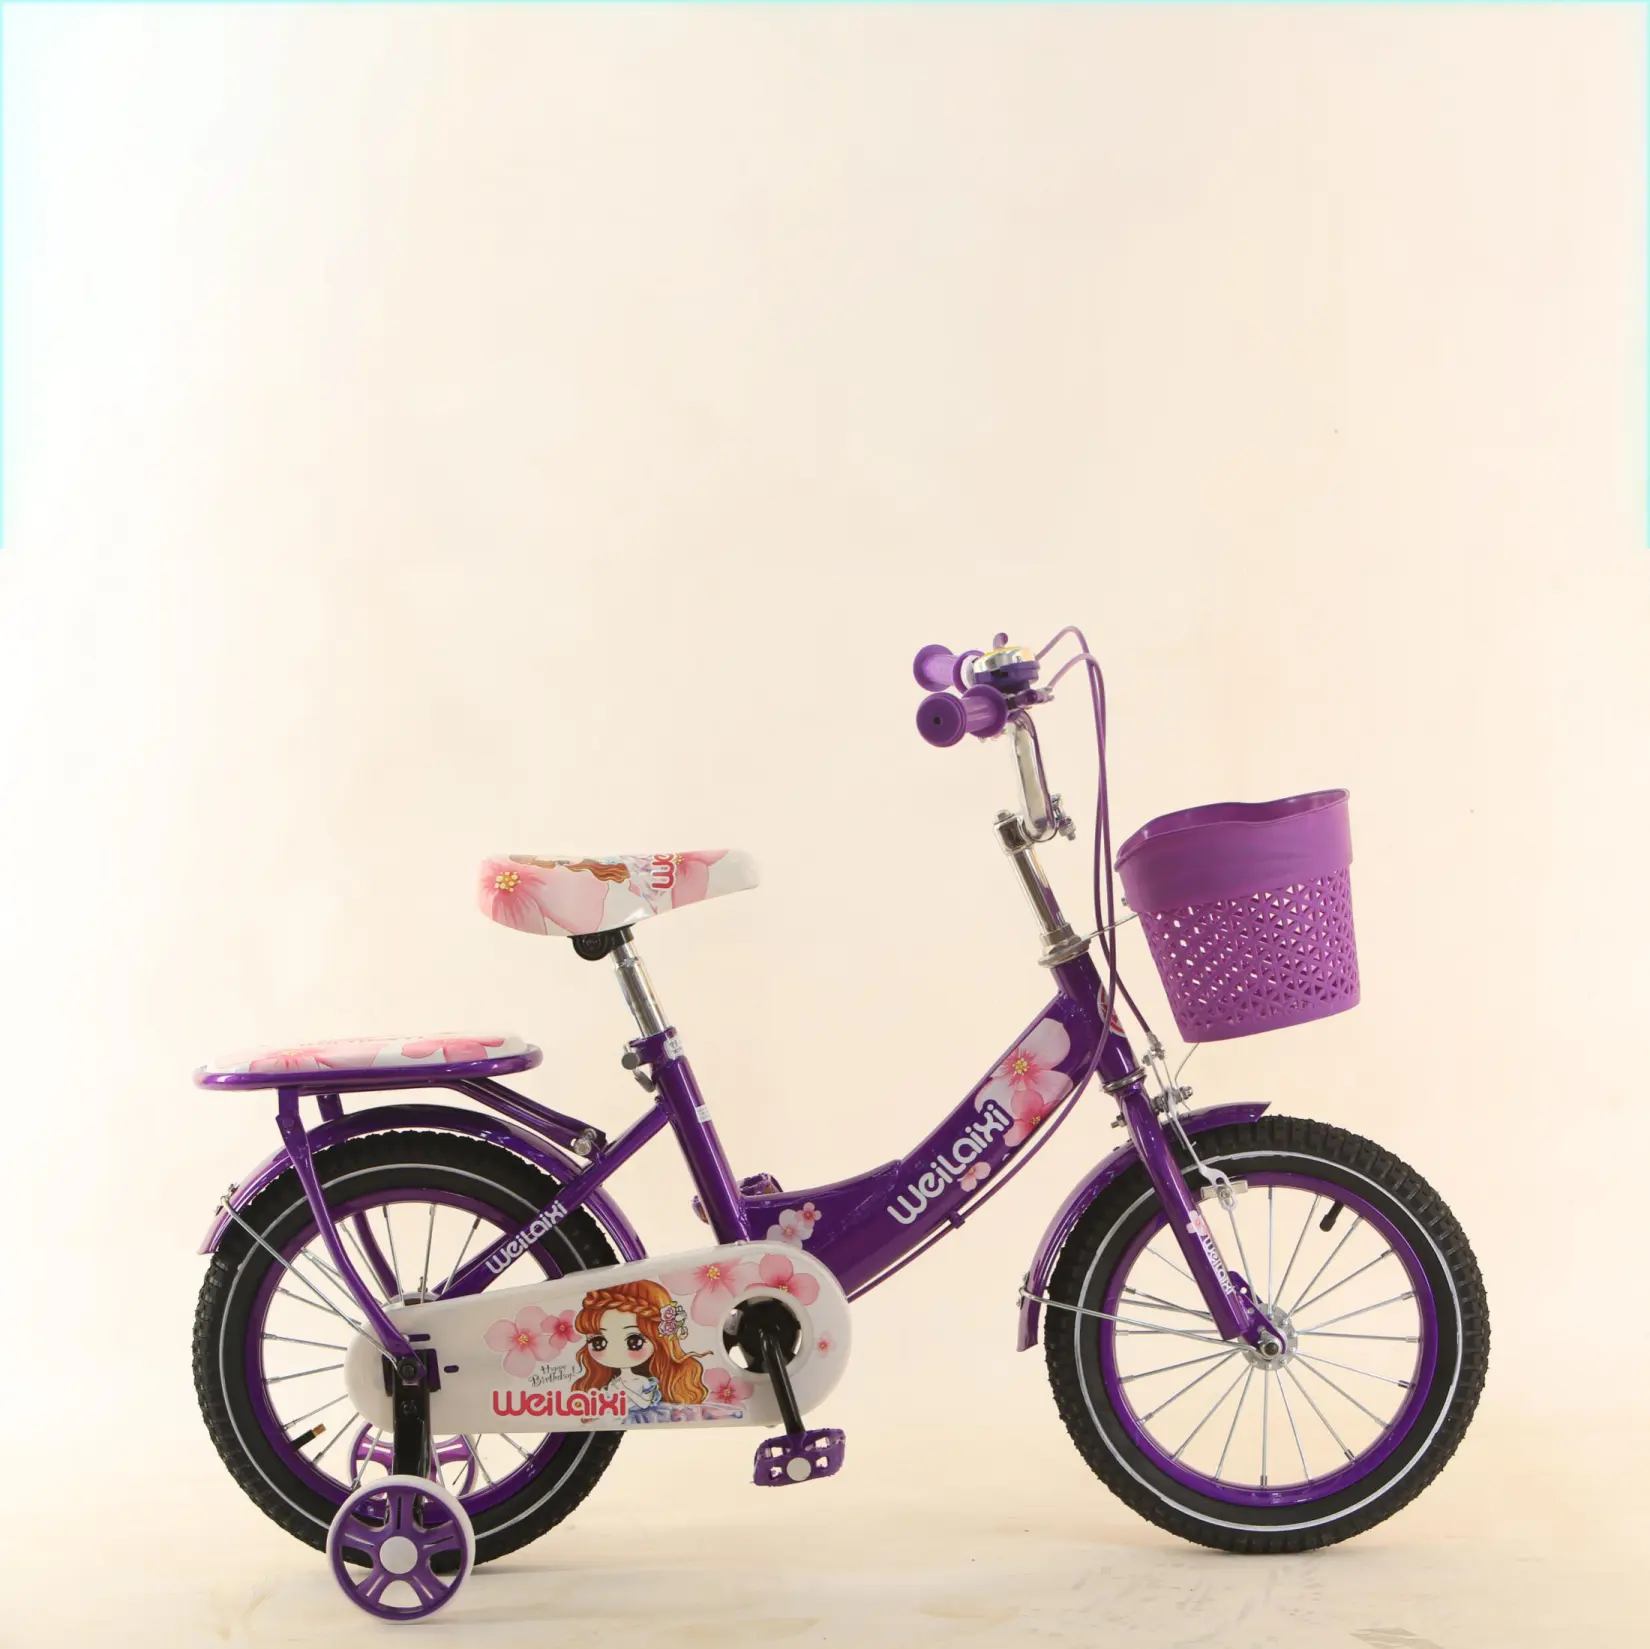 Popolare bicicletta per bambini da 14 pollici biciclette per bambini/bella bicicletta per bambini gril/bici per bambini di vendita calda per ragazze